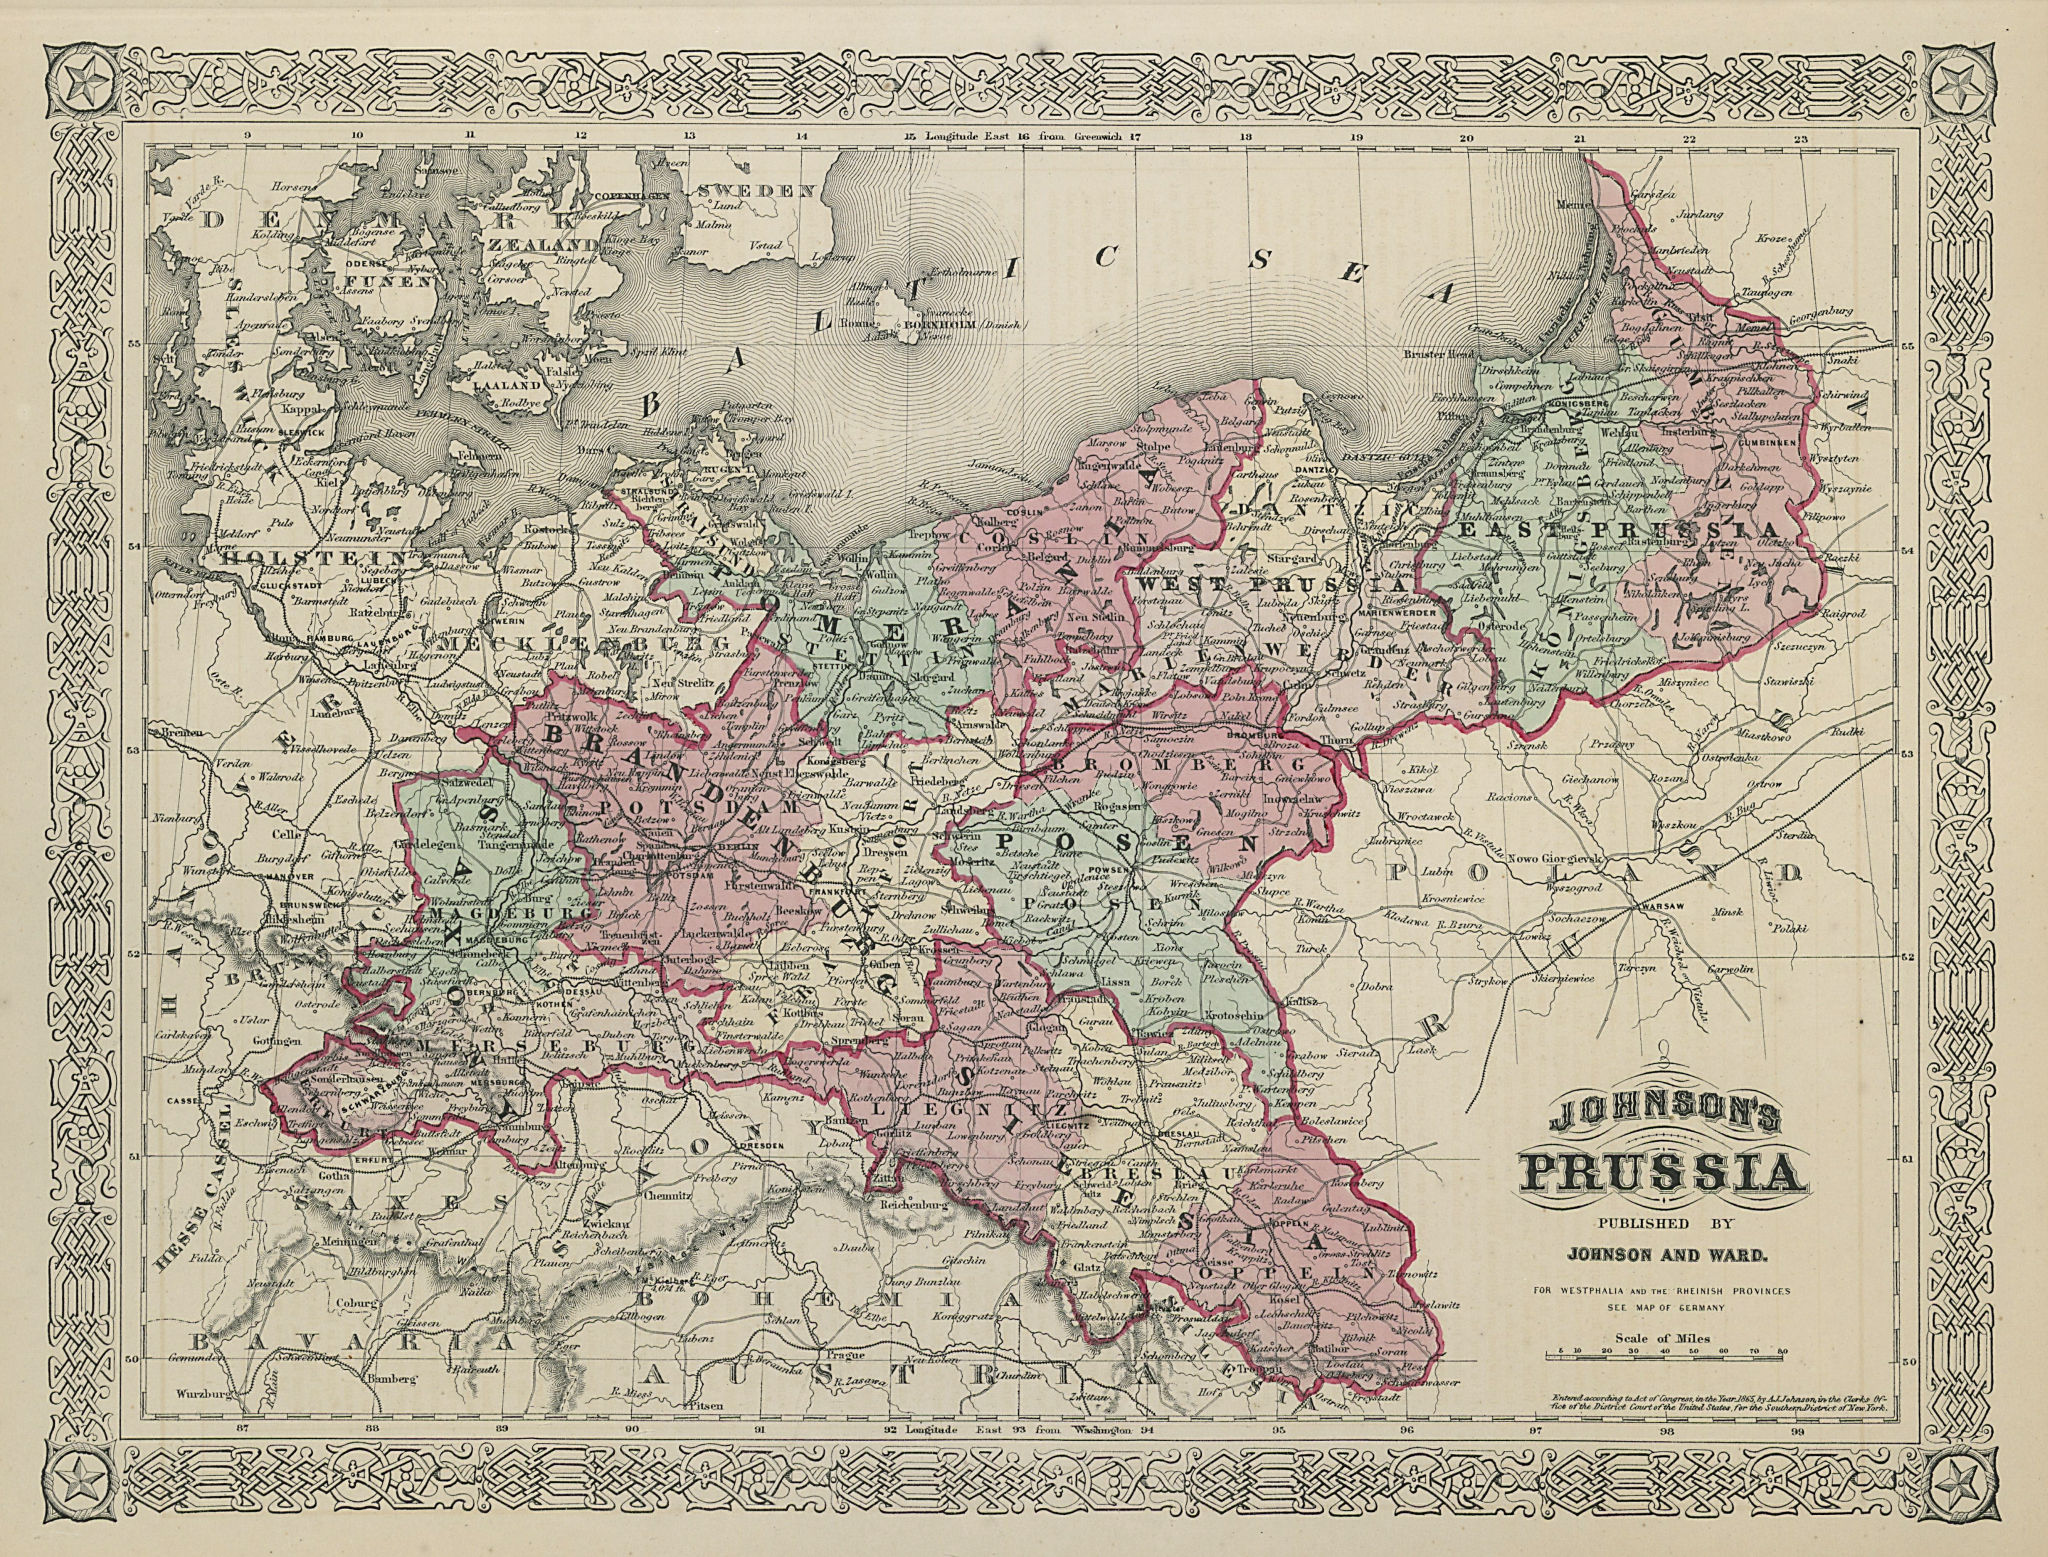 Associate Product Johnson's Prussia. Saxony Silesia Brandenburg Pomerania Posen Poland 1865 map